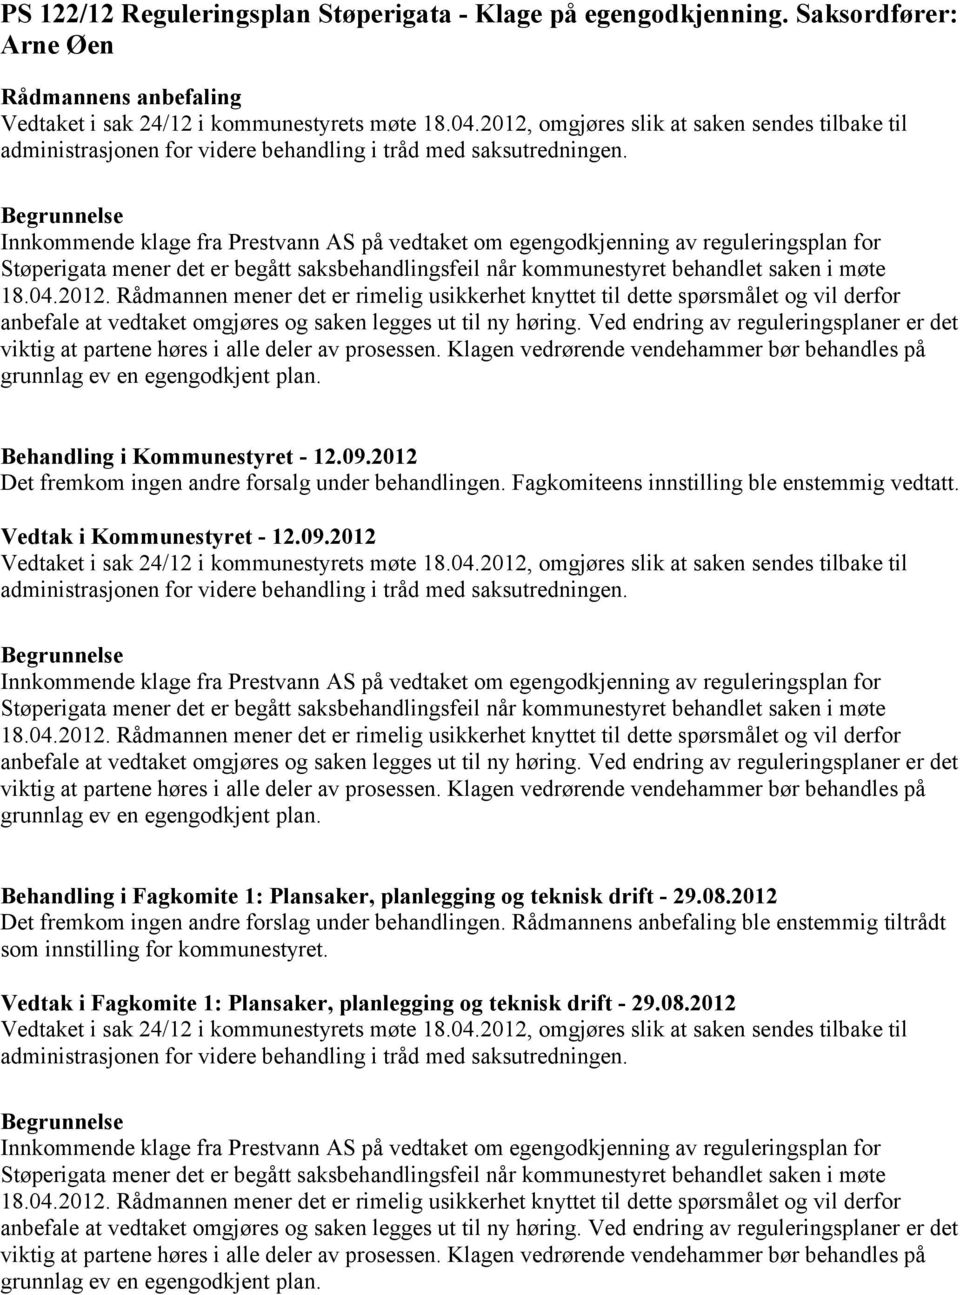 Innkommende klage fra Prestvann AS på vedtaket om egengodkjenning av reguleringsplan for Støperigata mener det er begått saksbehandlingsfeil når kommunestyret behandlet saken i møte 18.04.2012.